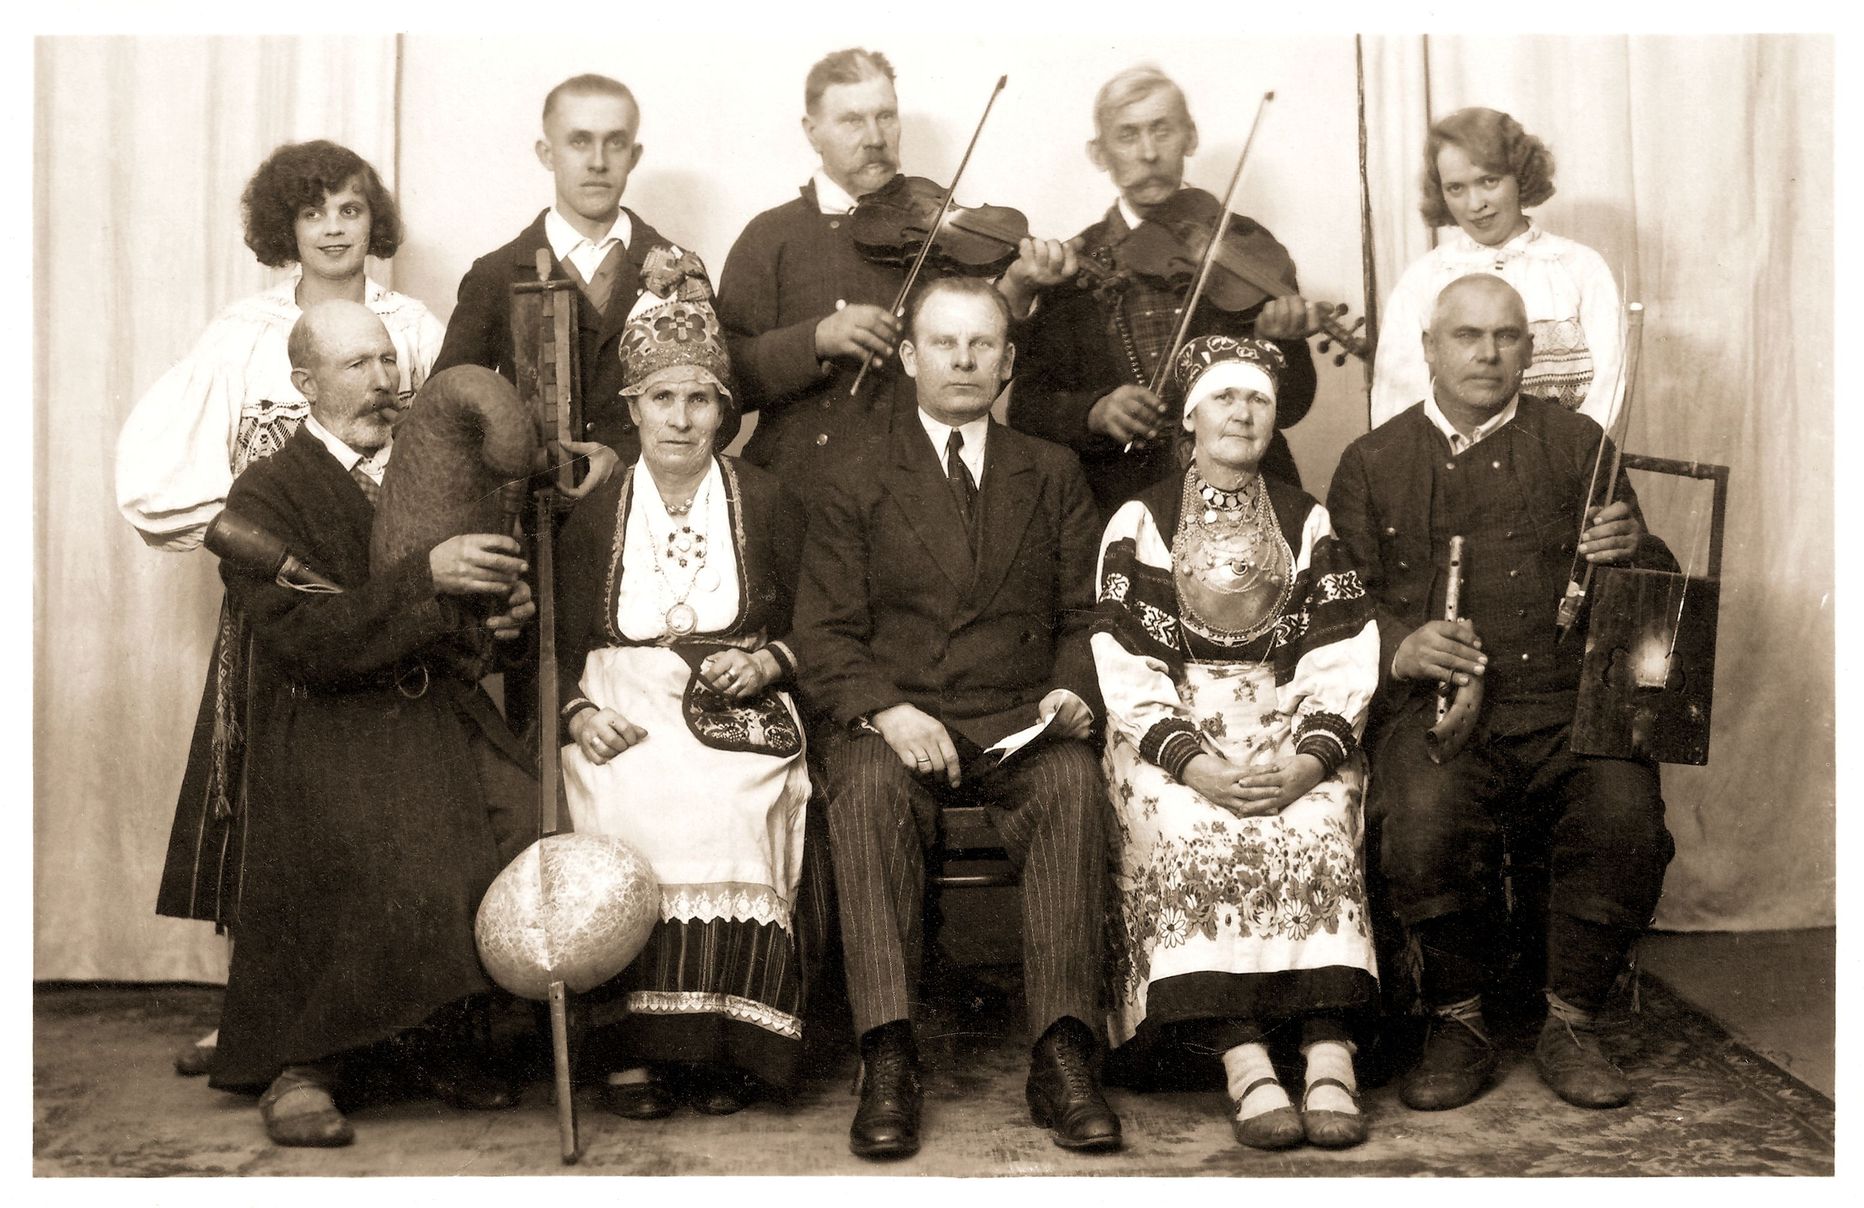 Lisaks pärimusmuusika kogumisele organiseeris August Pulst (esireas keskel) aastatel 1922–1936 muusikute ringreise.